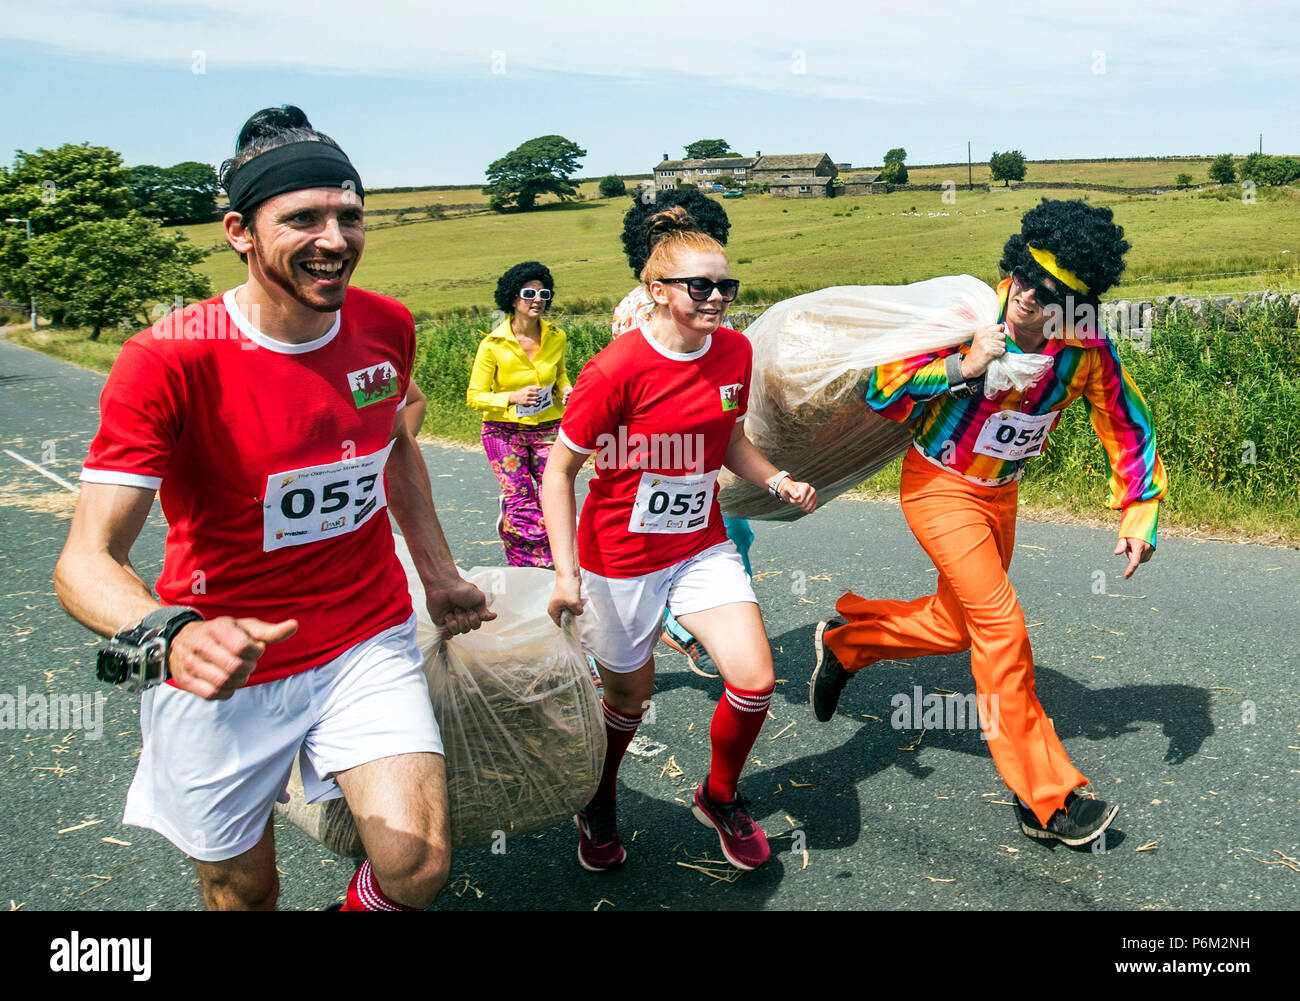 Los competidores toma parte en la carrera de paja Oxenhope en Yorkshire, a 2.5 millas de carrera en Fancy Dress , llevando una paca de paja de 20 kg, mientras que la parada de las pintas de cerveza a lo largo de la ruta. Foto de stock